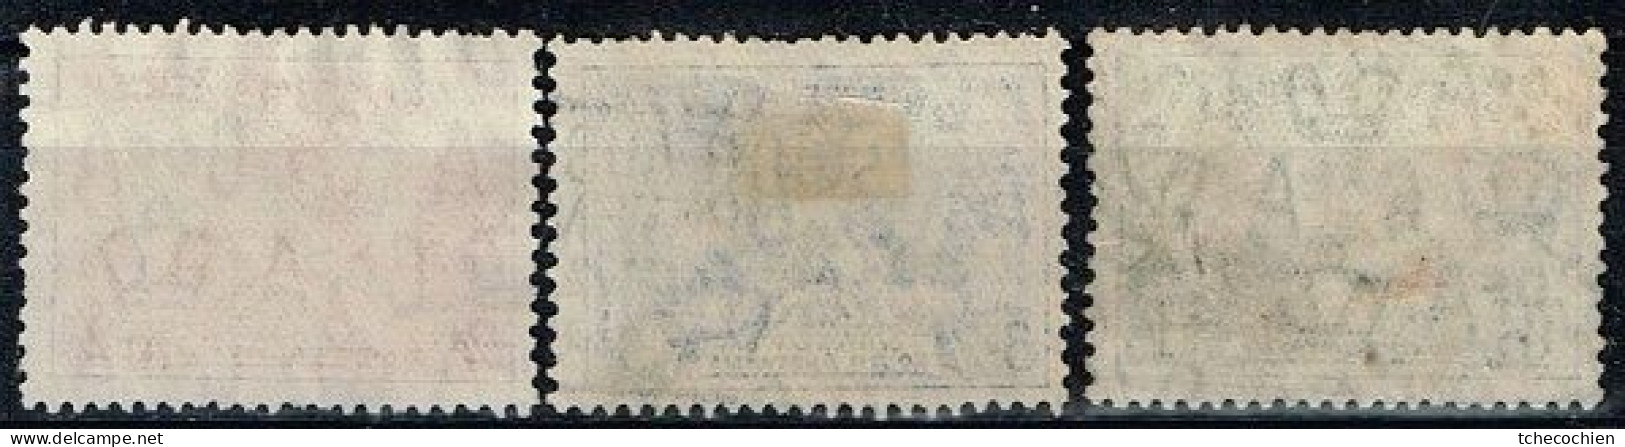 Australie - 1936 - Y&T N° 107 à 109 Oblitérés - Oblitérés